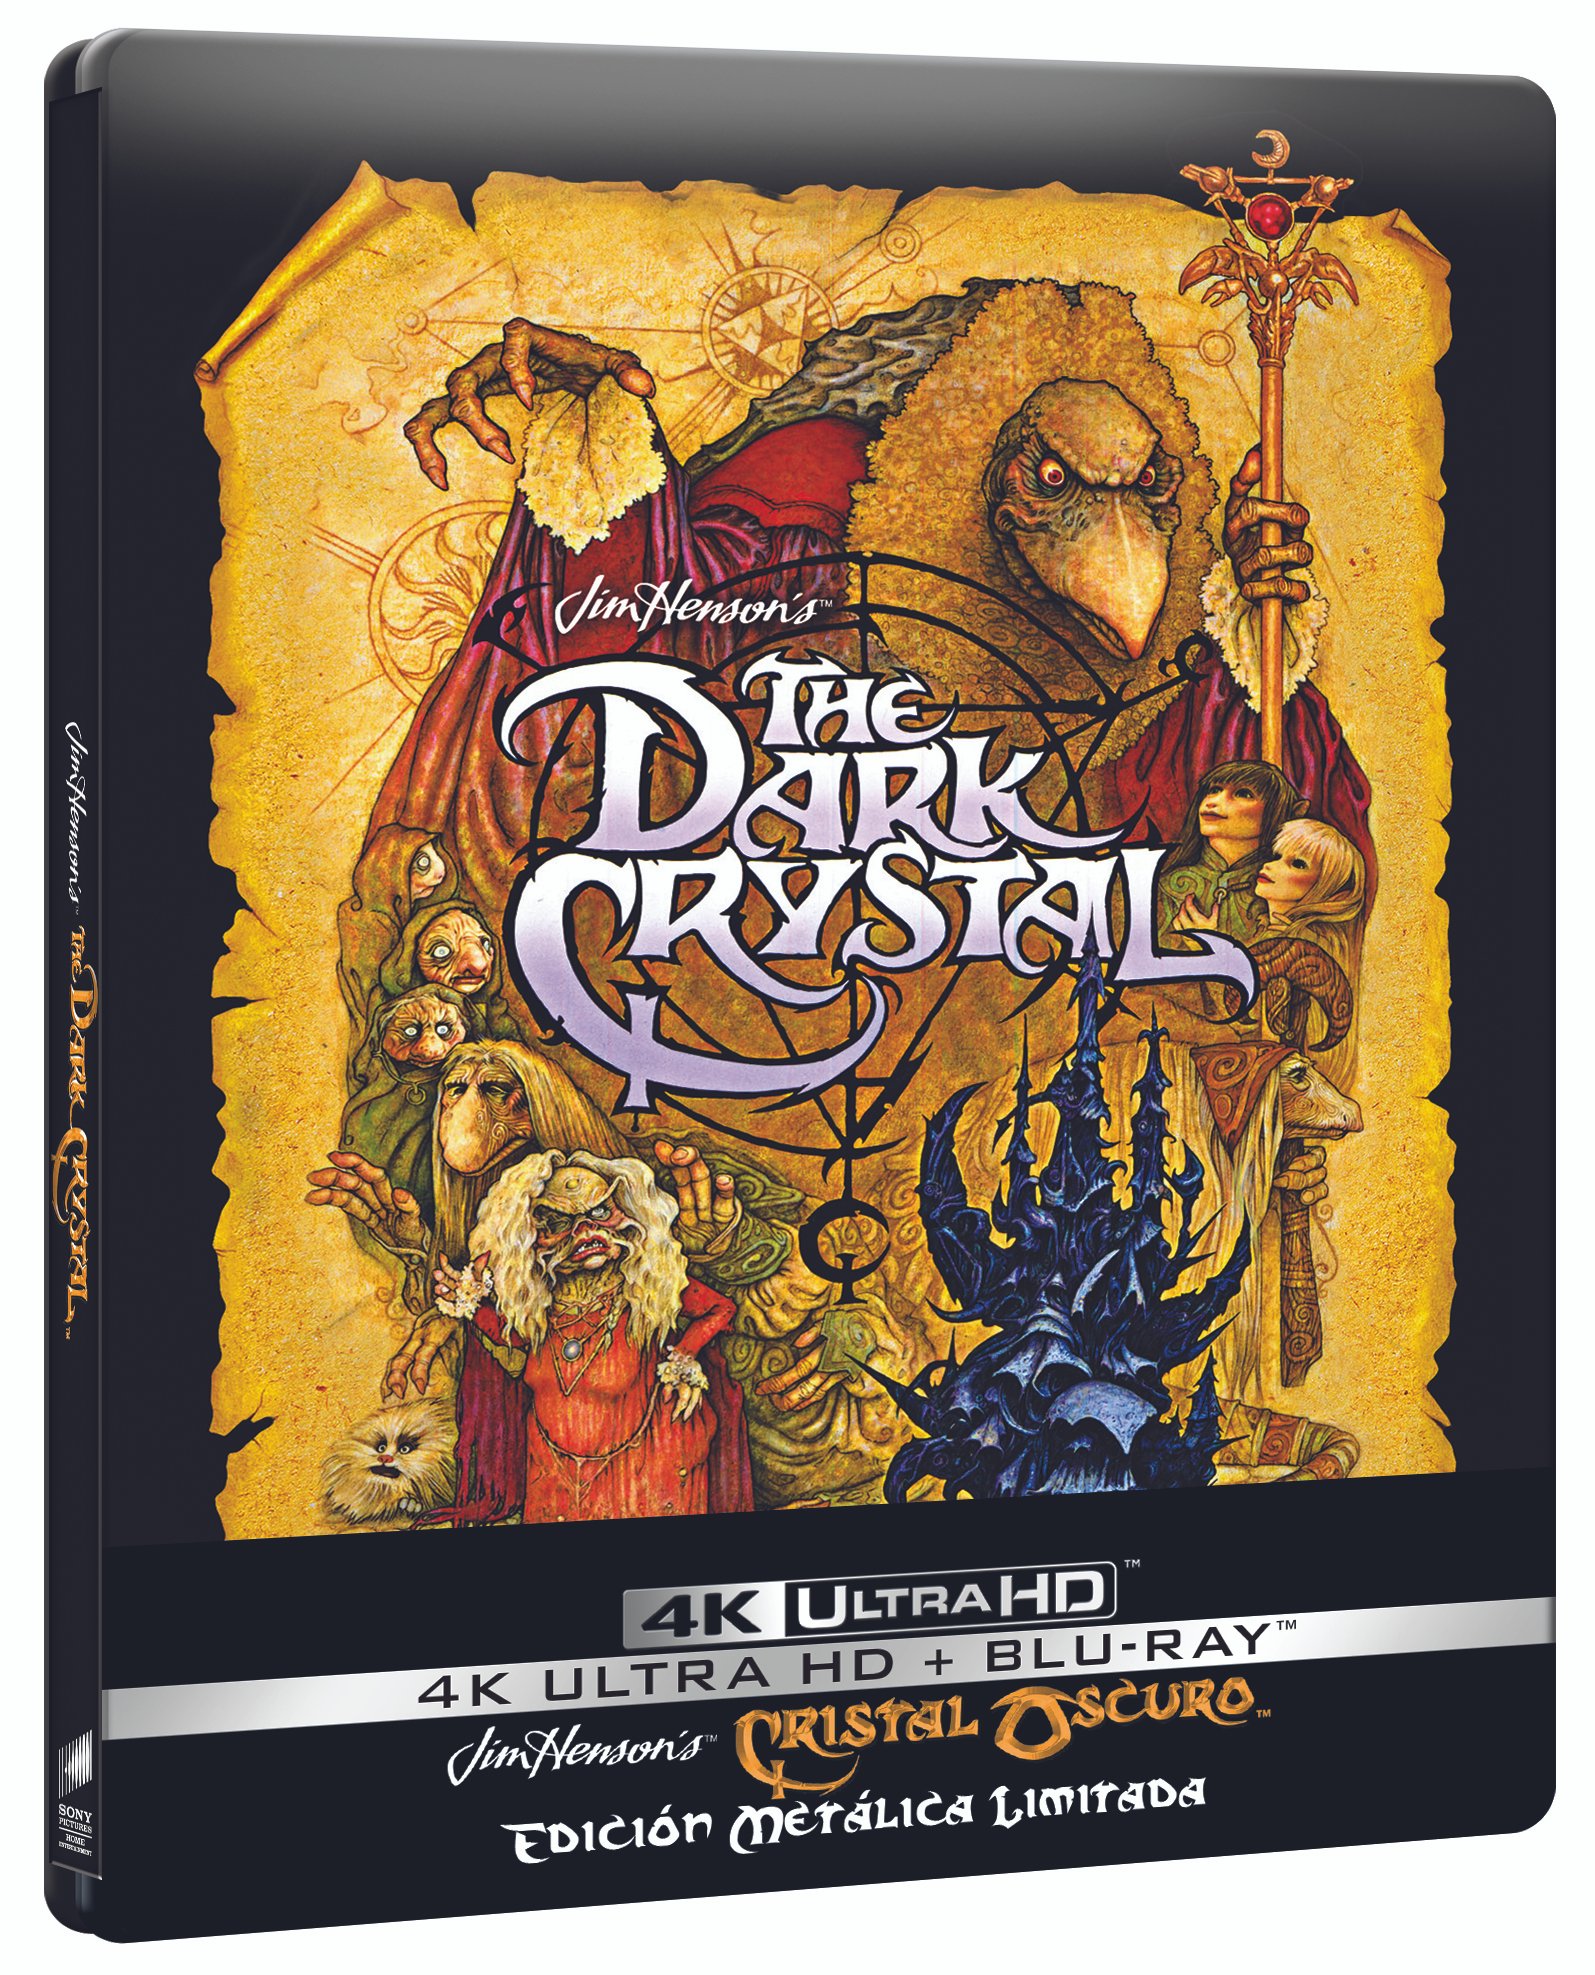 'Cristal Oscuro' llegará en 4K Ultra HD el 7 de marzo ¡STEELBOOK! • En tu pantalla